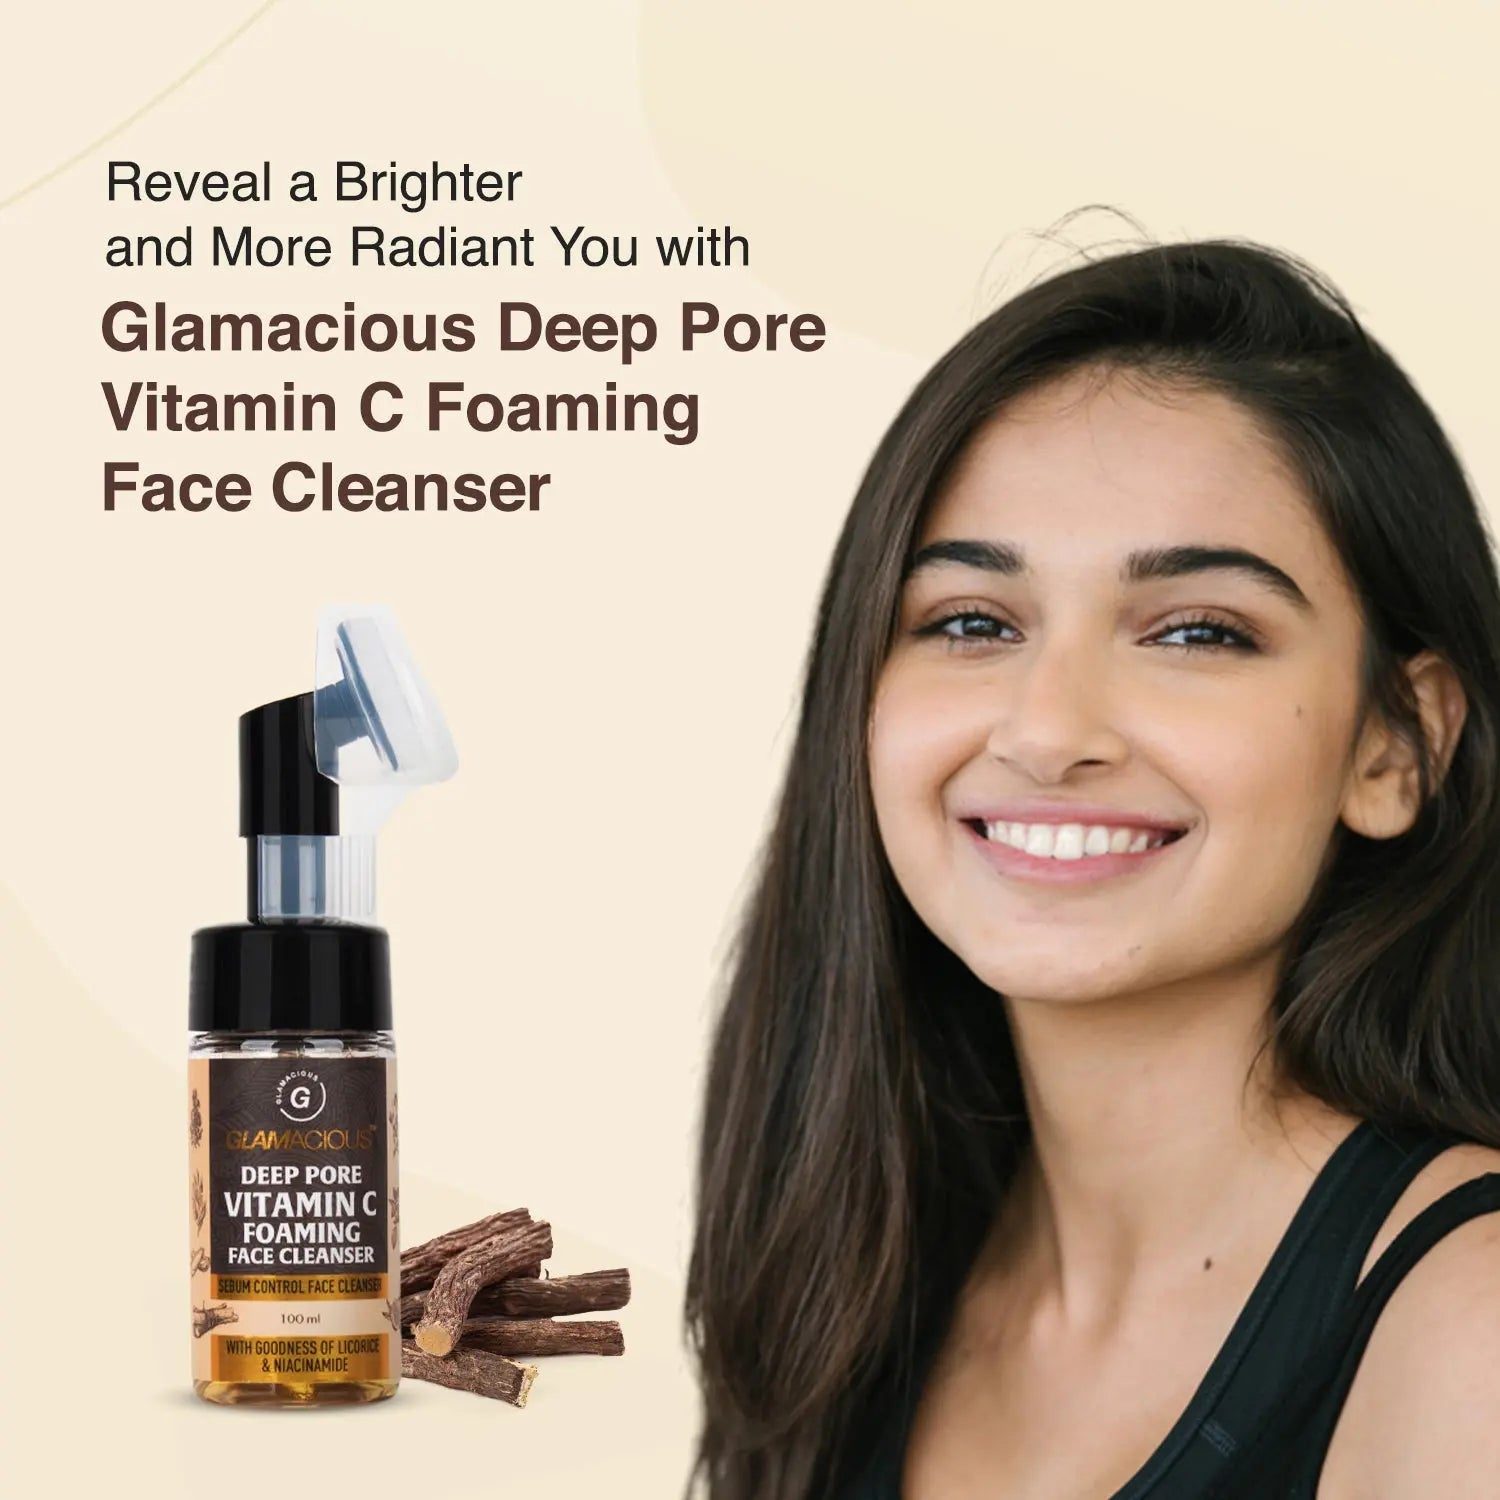 Glamacious Deep Pore Vitamin C Foaming Face Cleanser - Glamacious